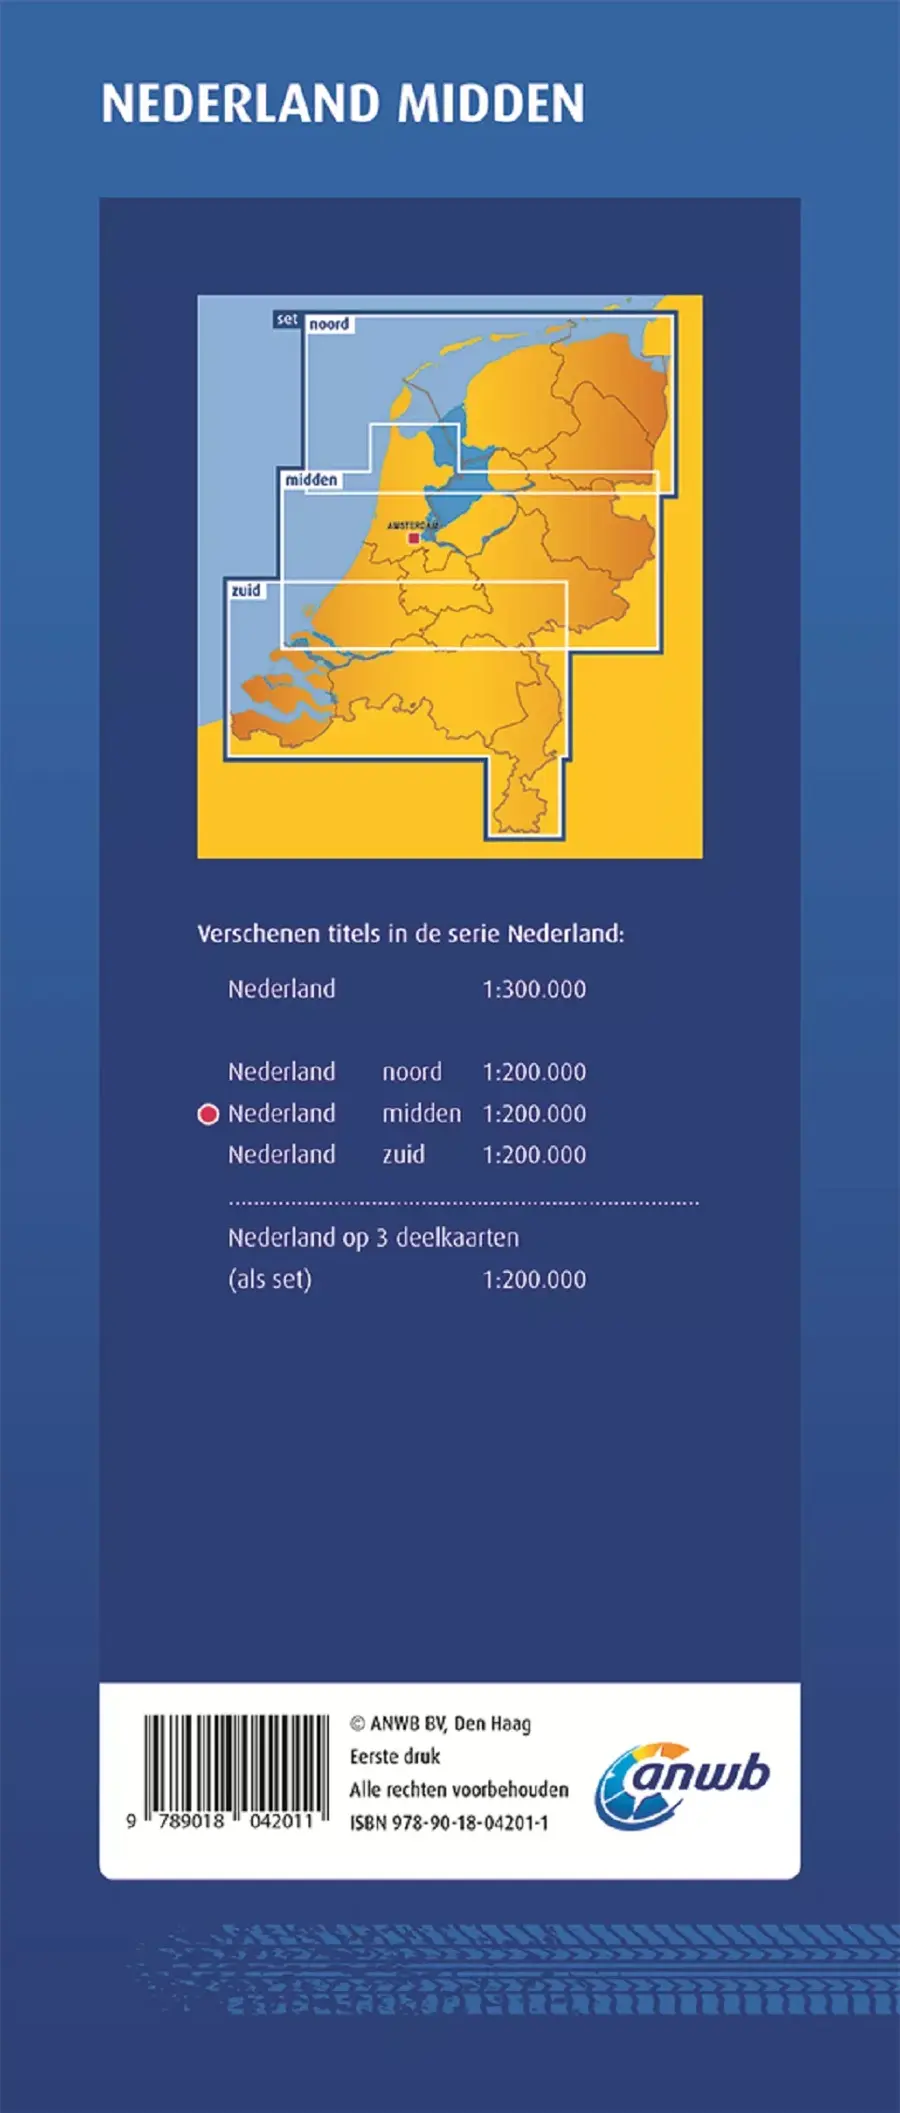 ANWB Wegenkaart Nederland midden